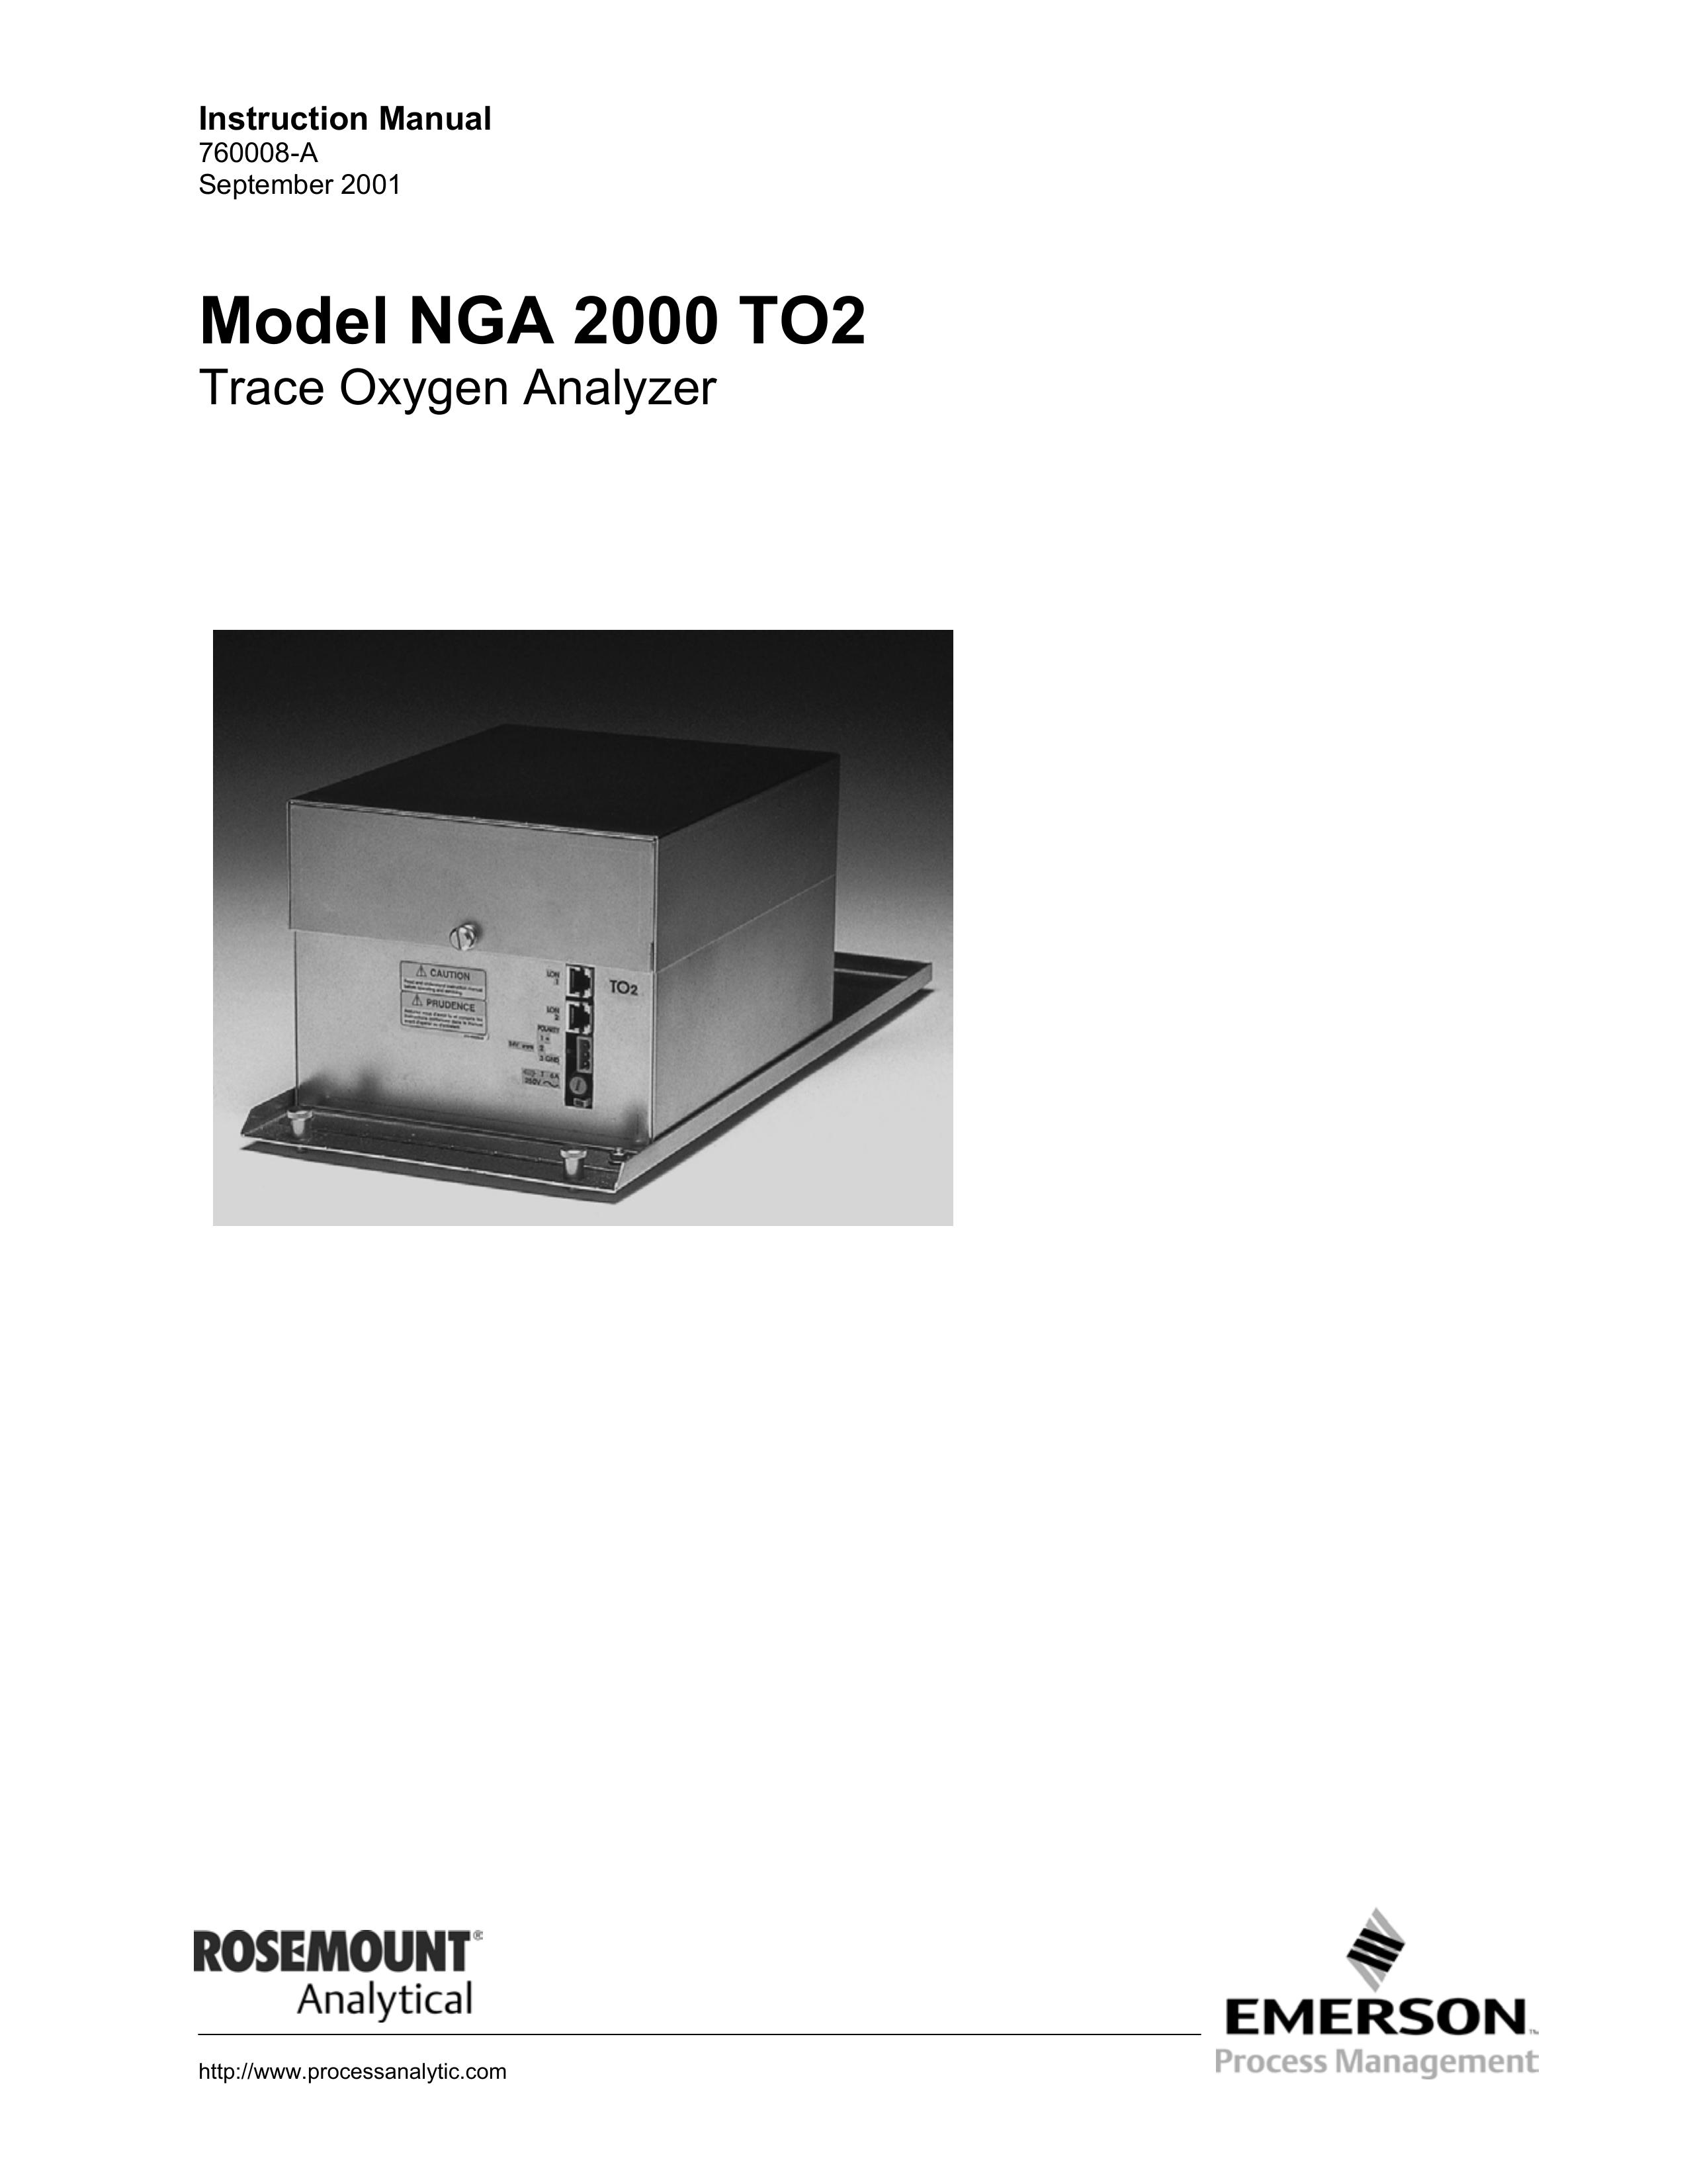 Emerson NGA 2000 TO2 Respiratory Product User Manual